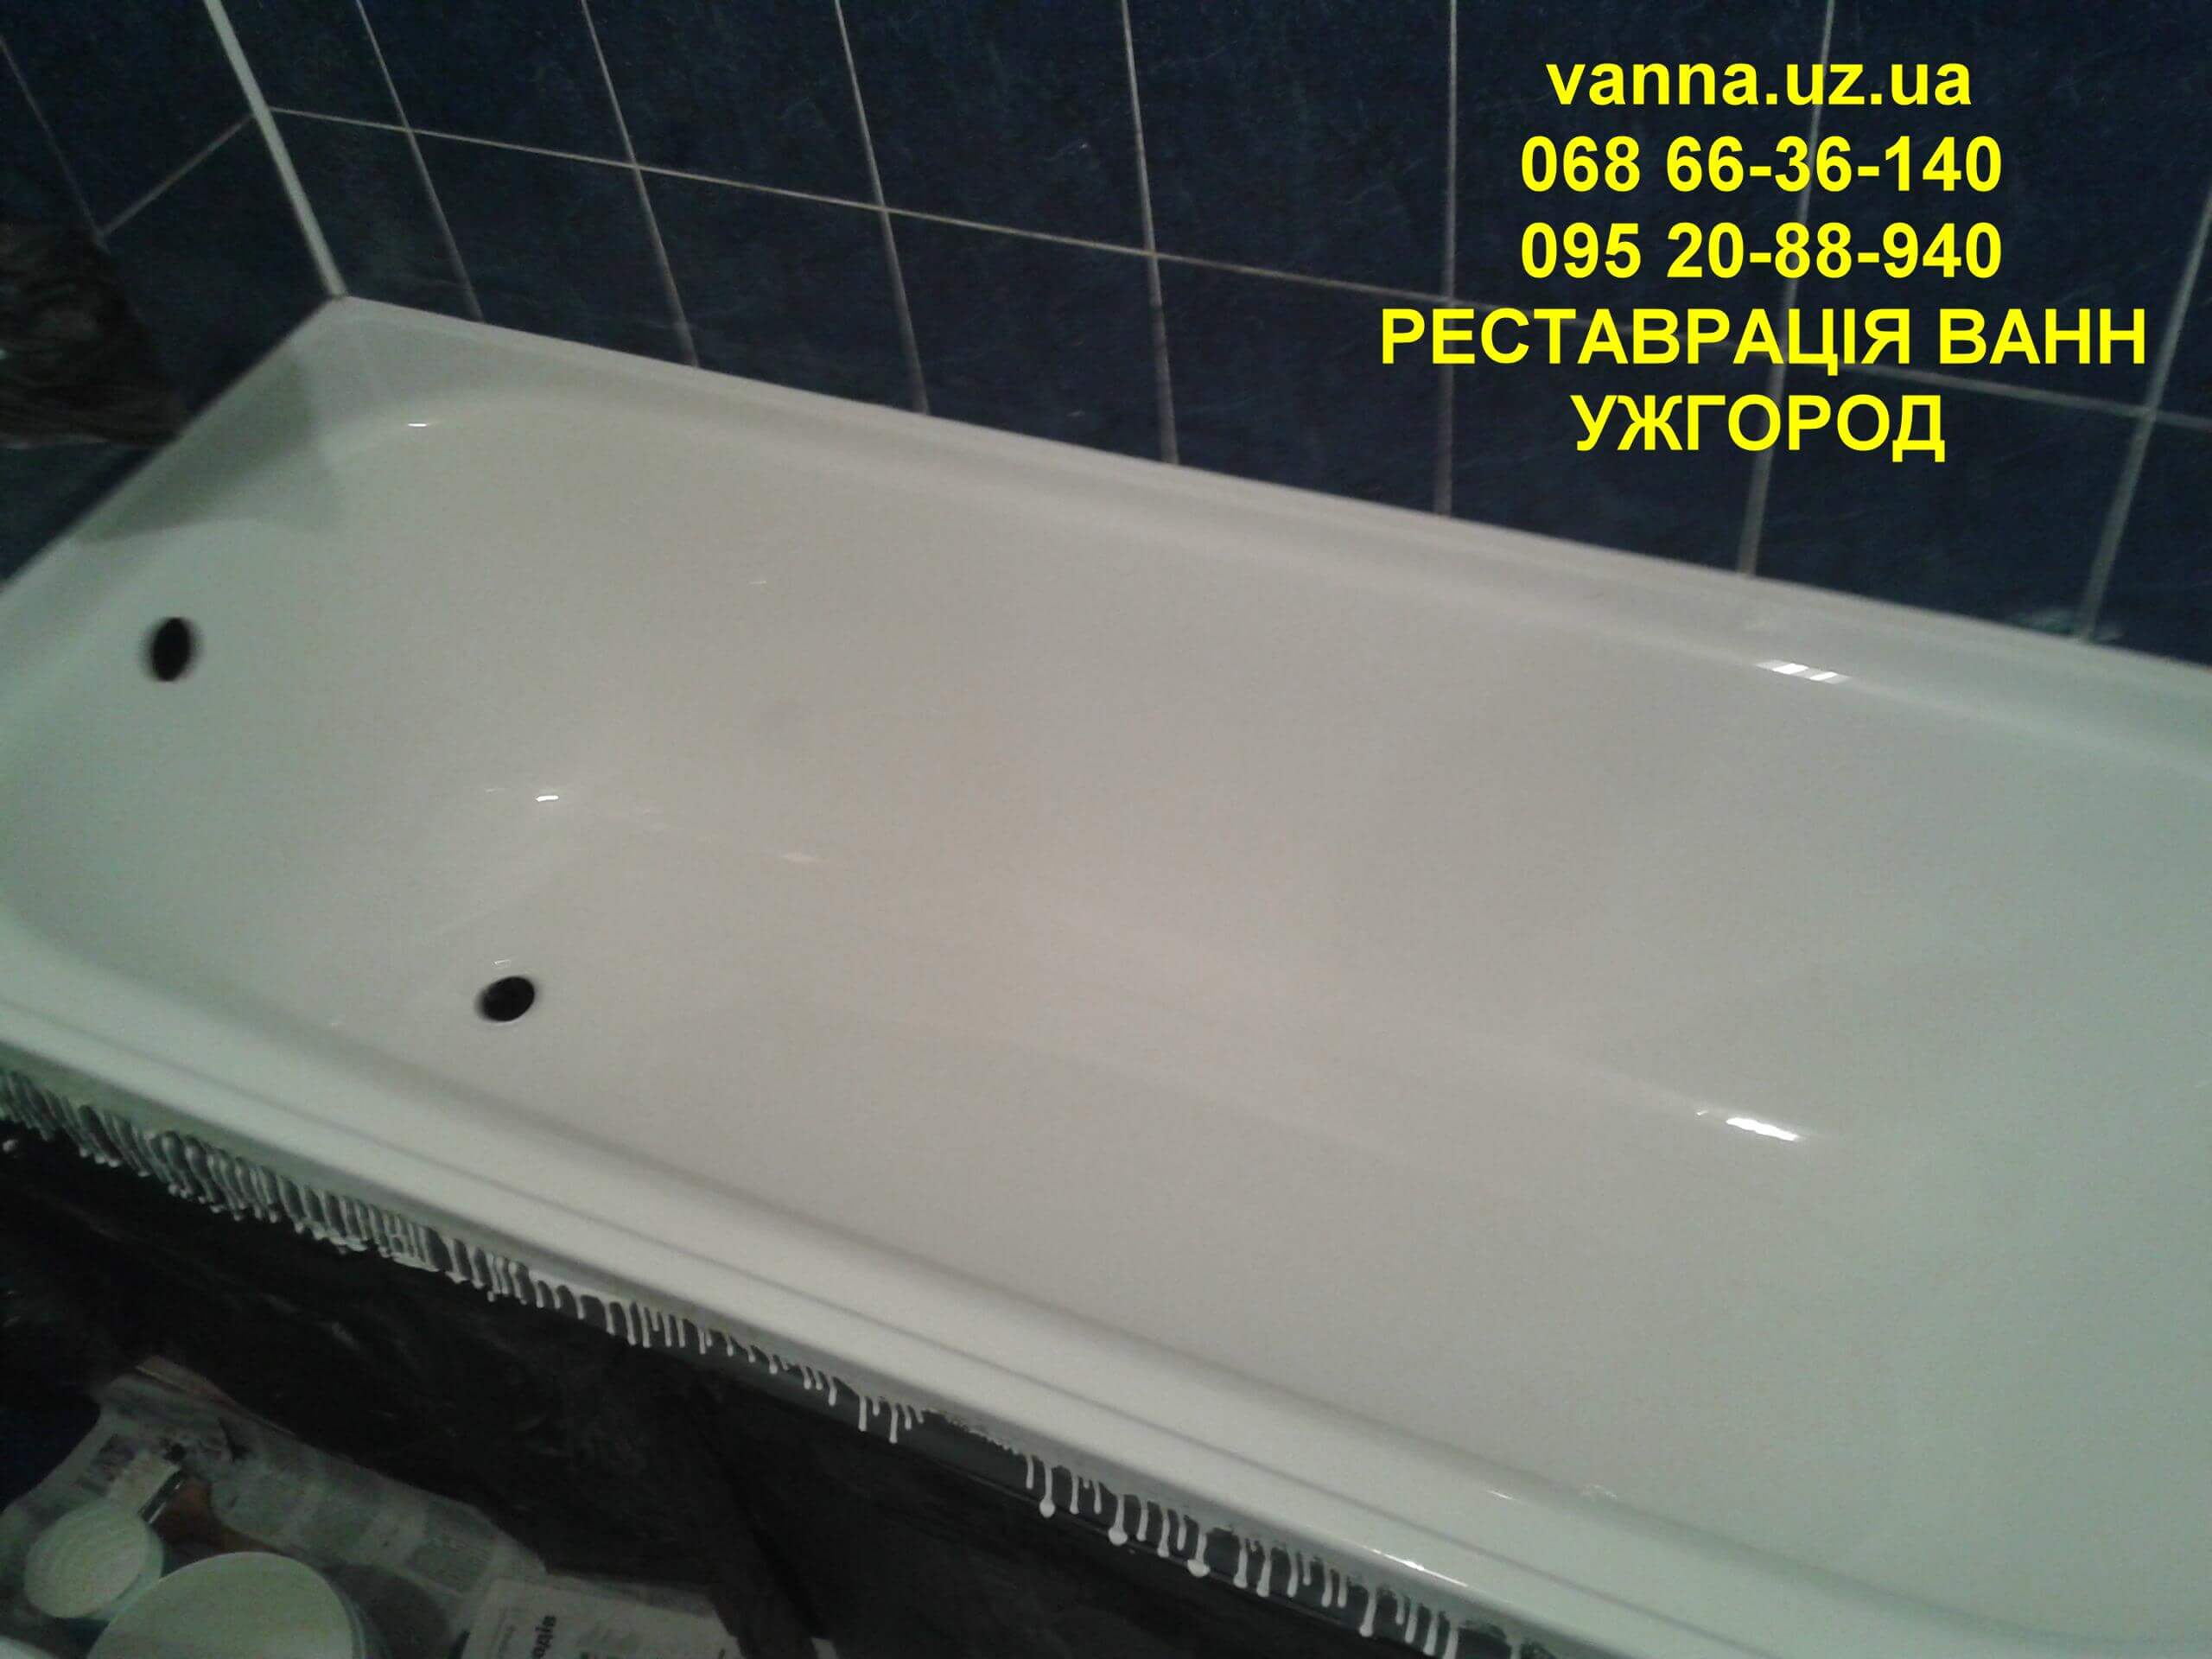 Якісно зроблена реставрація ванни в Ужгороді (1)